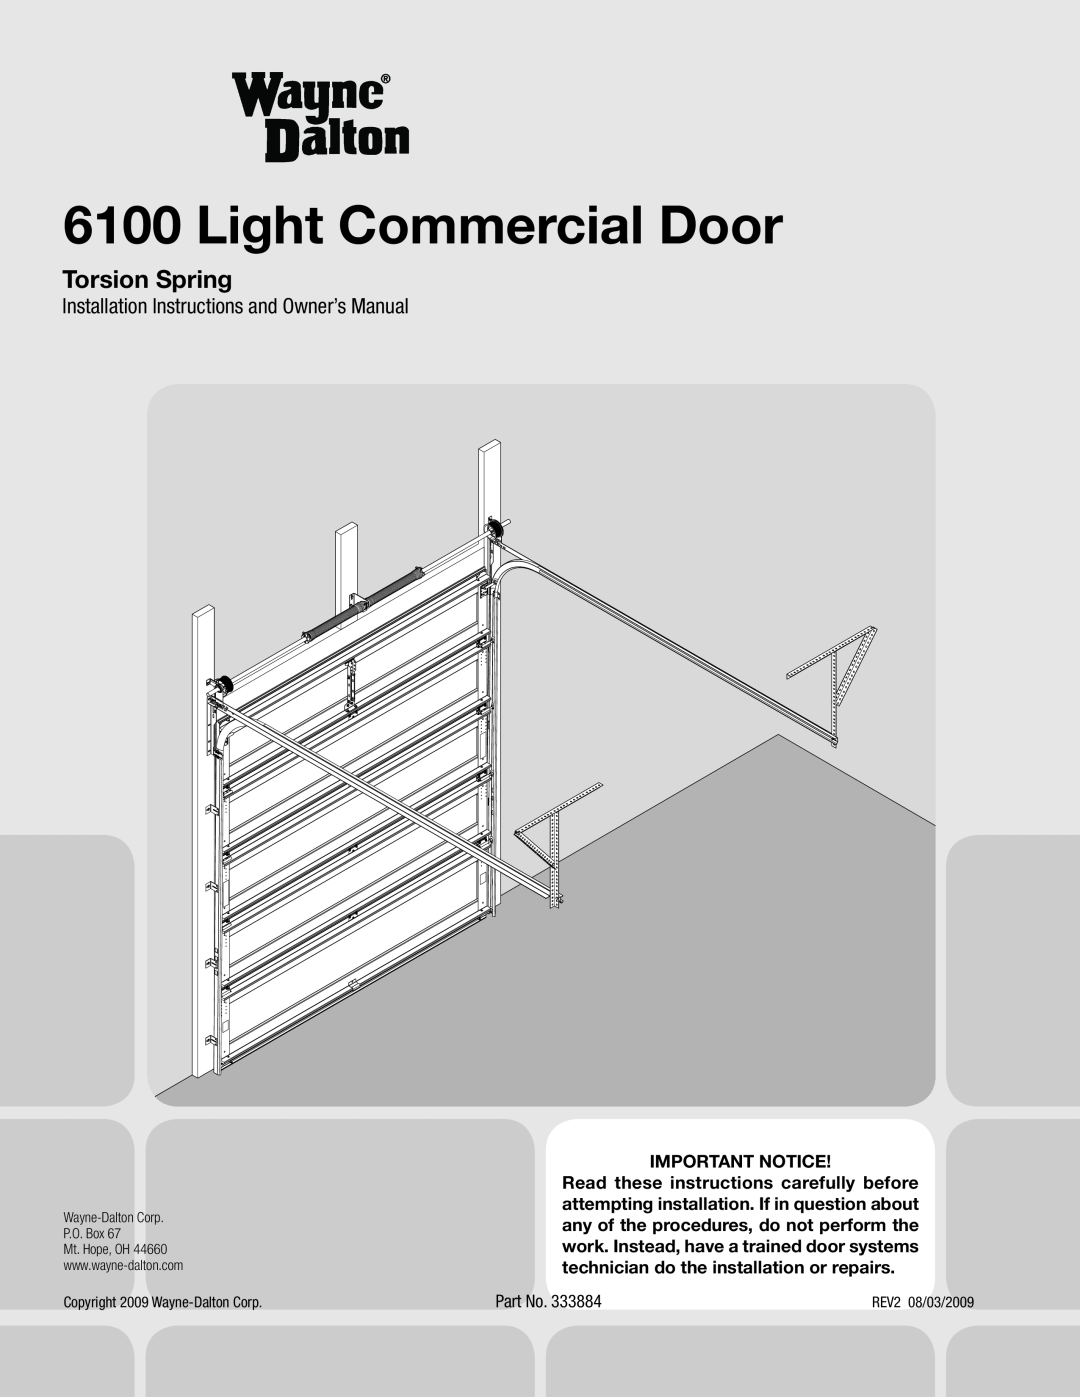 Wayne-Dalton 6100 installation instructions Light Commercial Door, Torsion Spring, Important Notice 